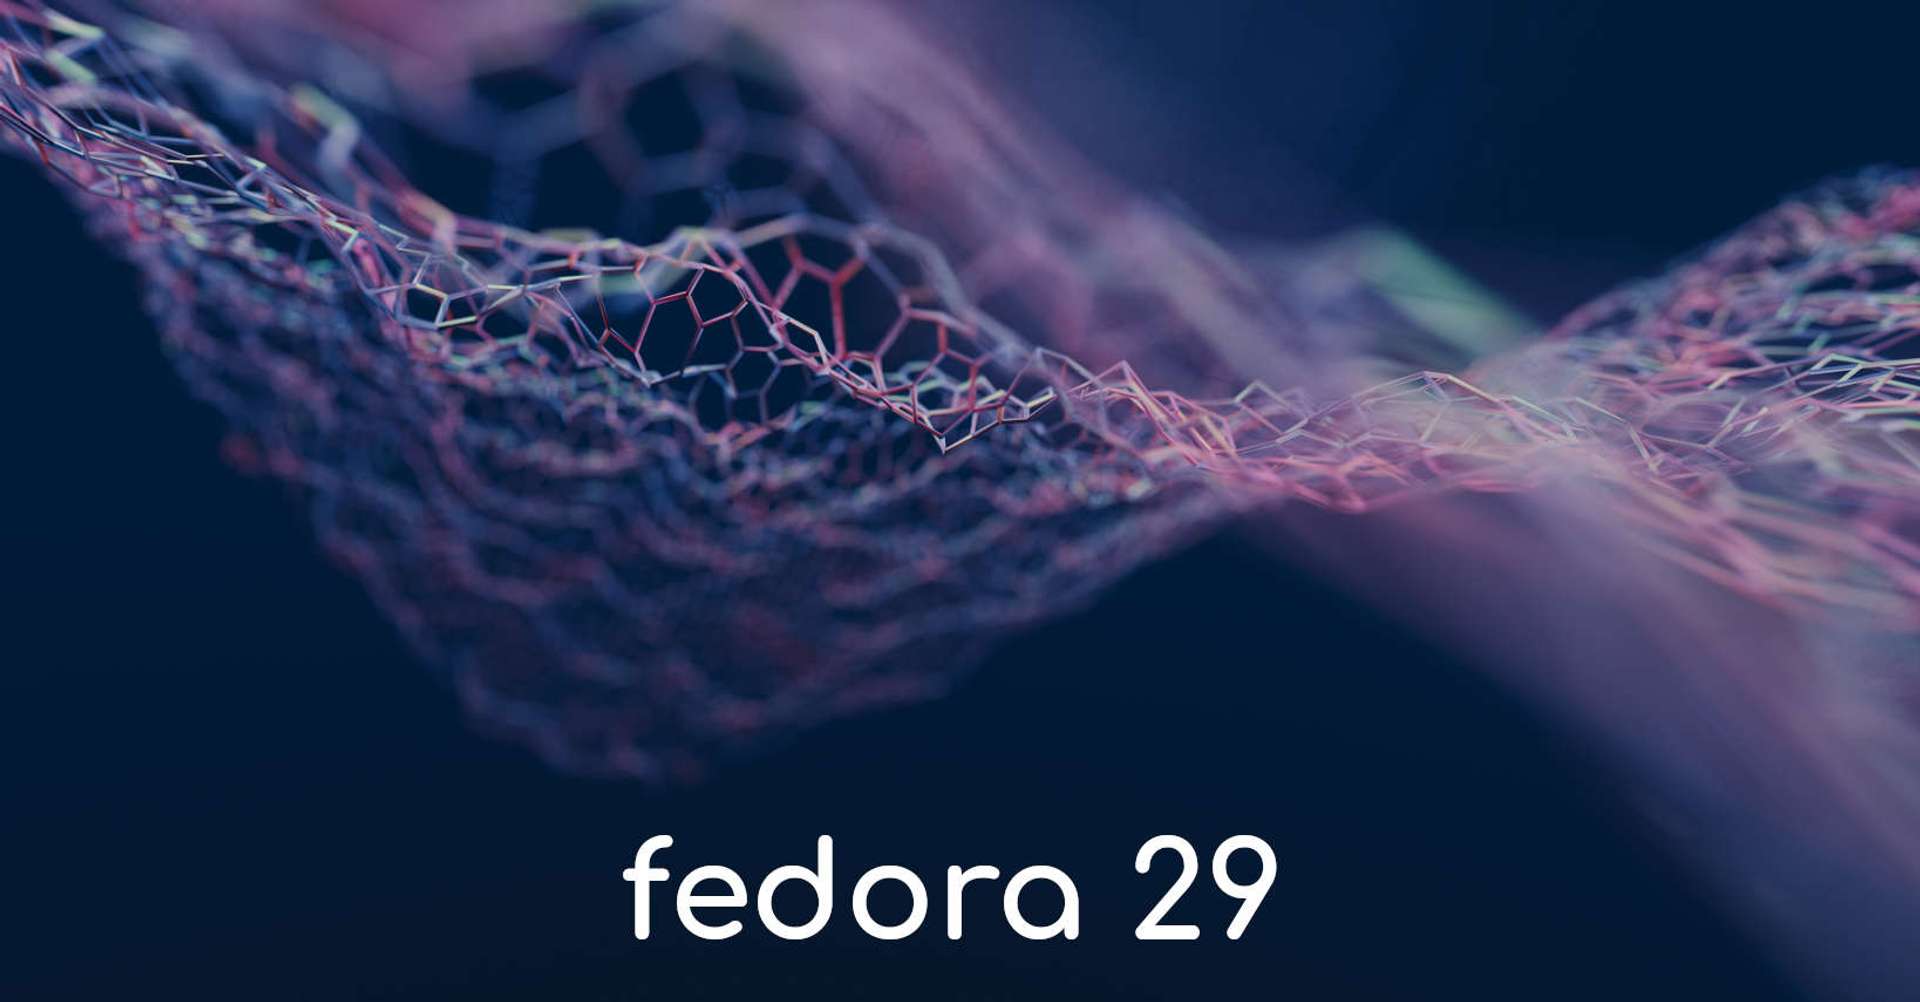 /img/fedora-29/fedora-29-background-logo.jpg